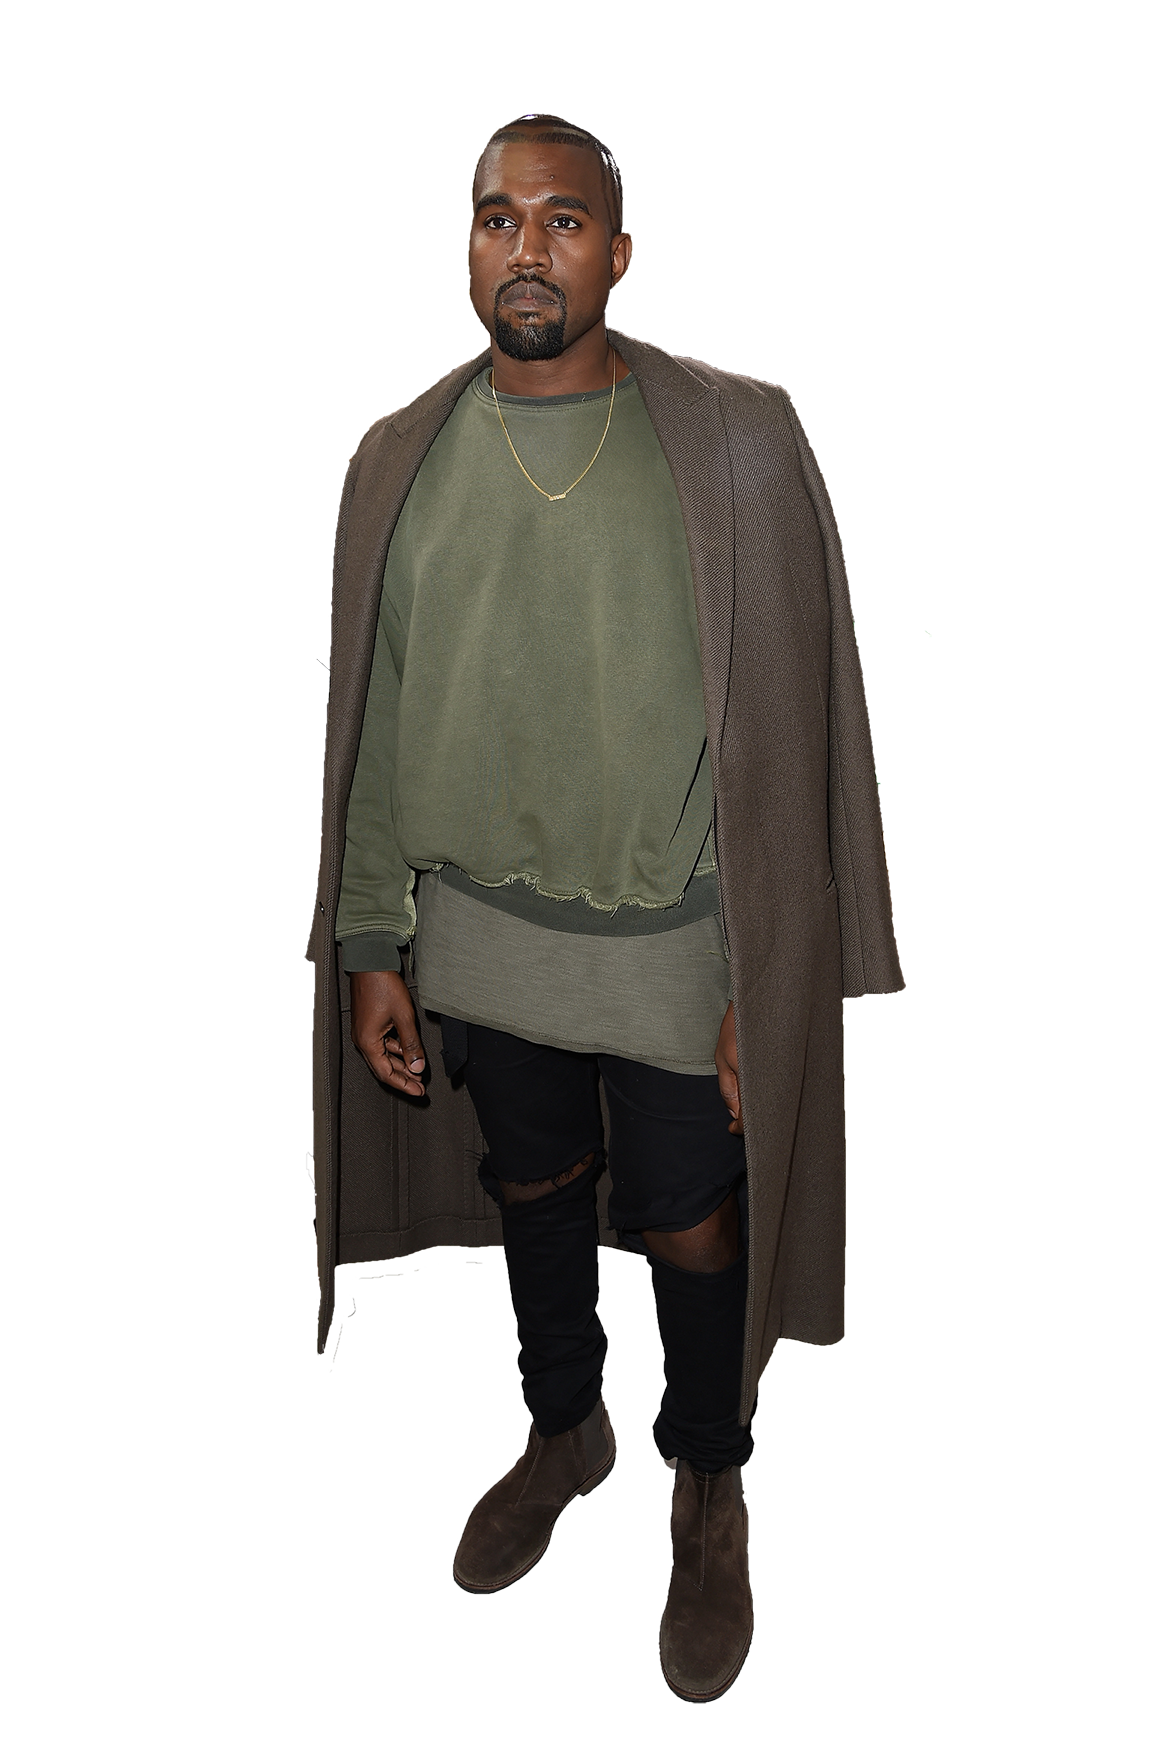 Rapper Kanye West PNG Transparent Image